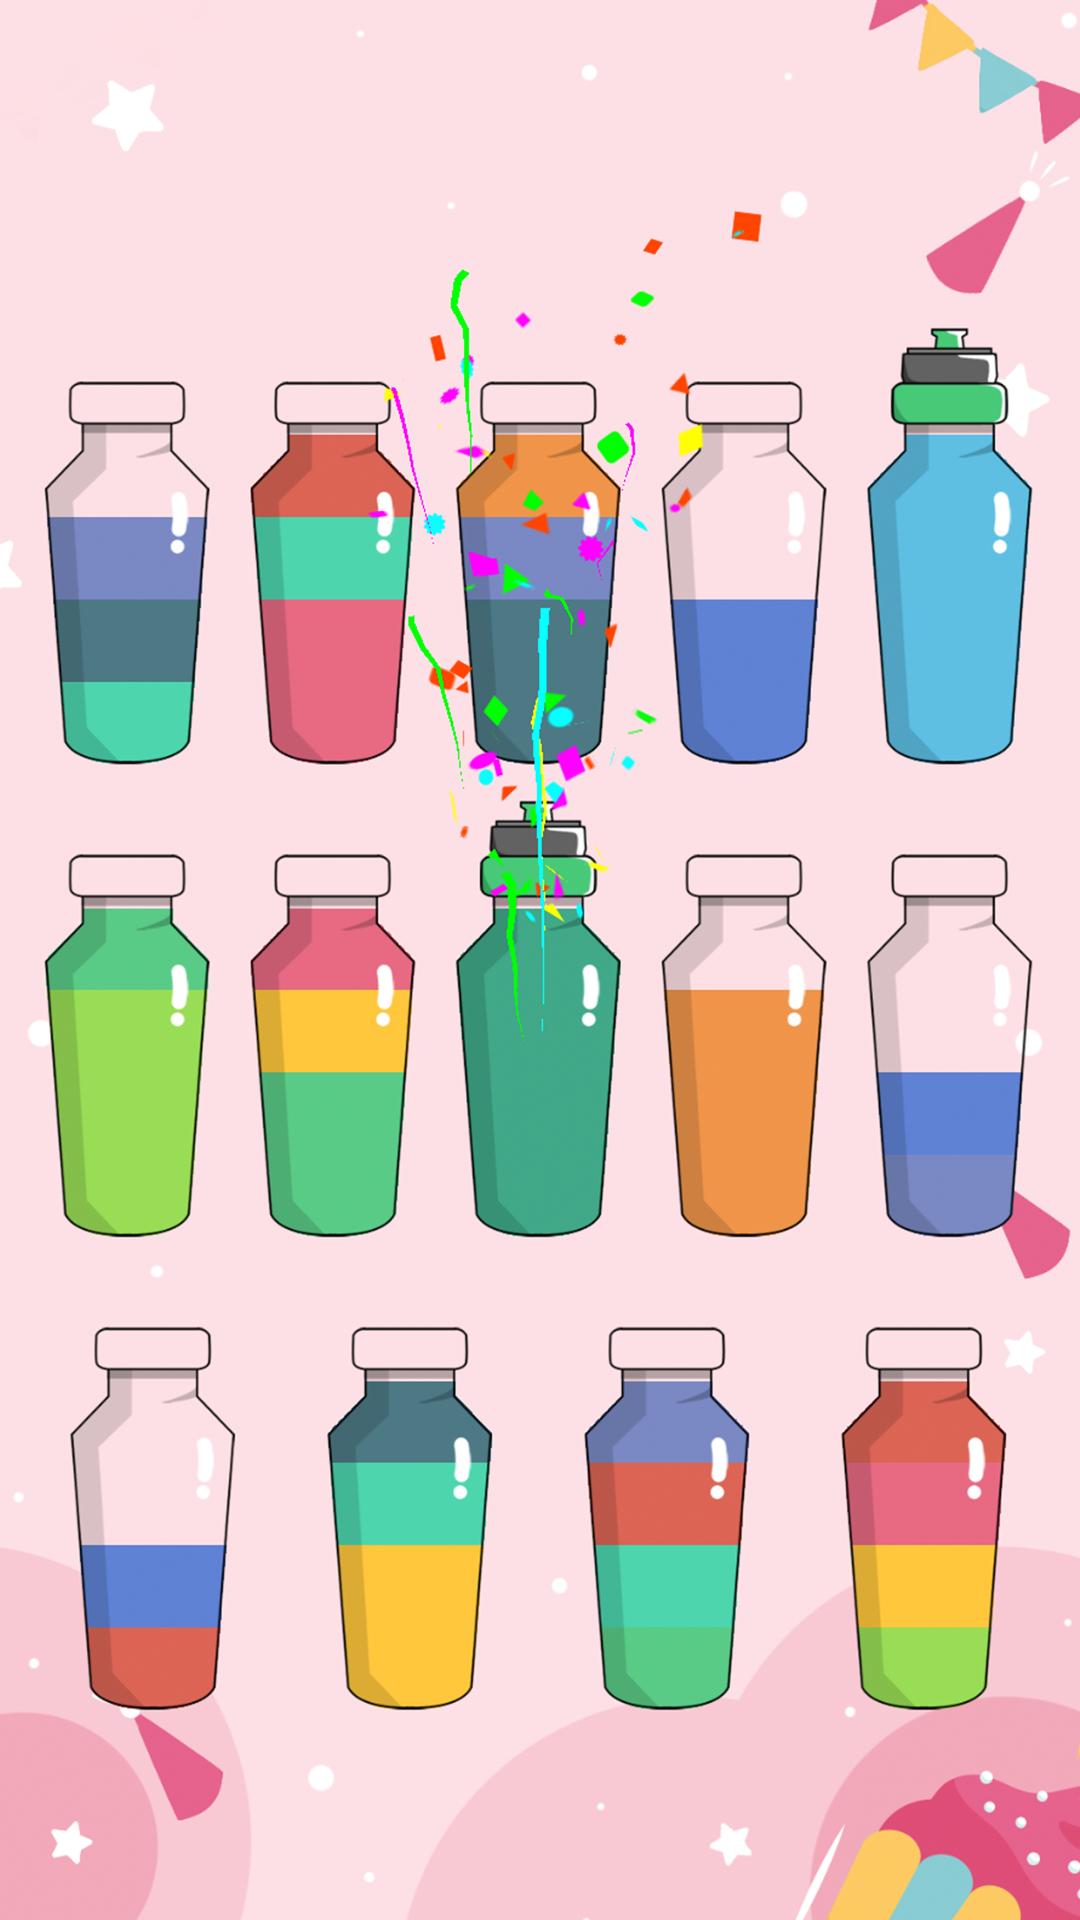 Переливание красок играть. Игра цветные бутылочки. Игра бутылочки с разноцветной жидкостью. Бутылочки для переливания. Цветные флаконы.